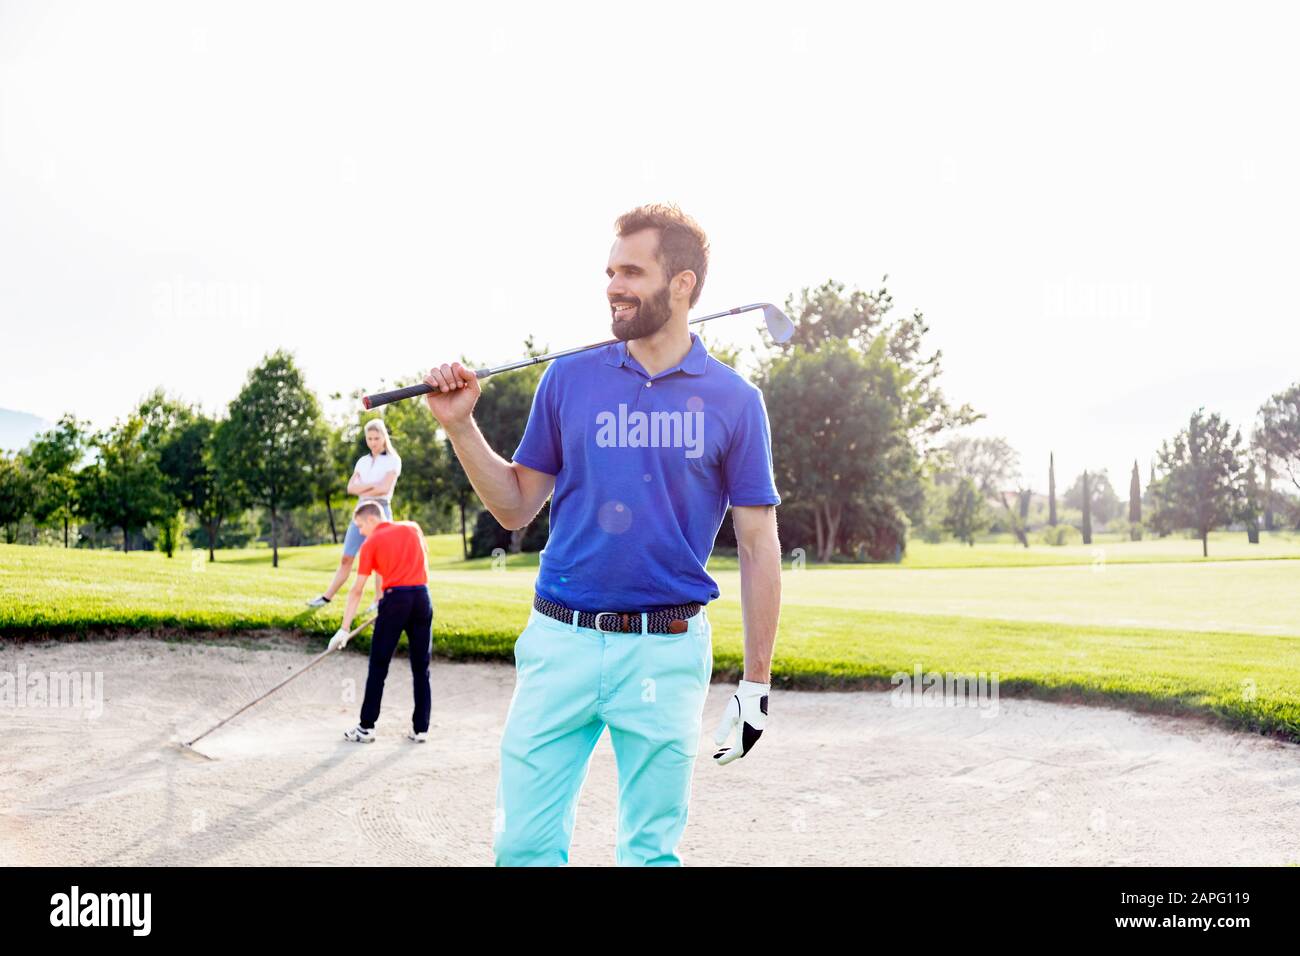 Hombre llevando club de golf en el campo de golf, amigos jugando al golf en el fondo Foto de stock